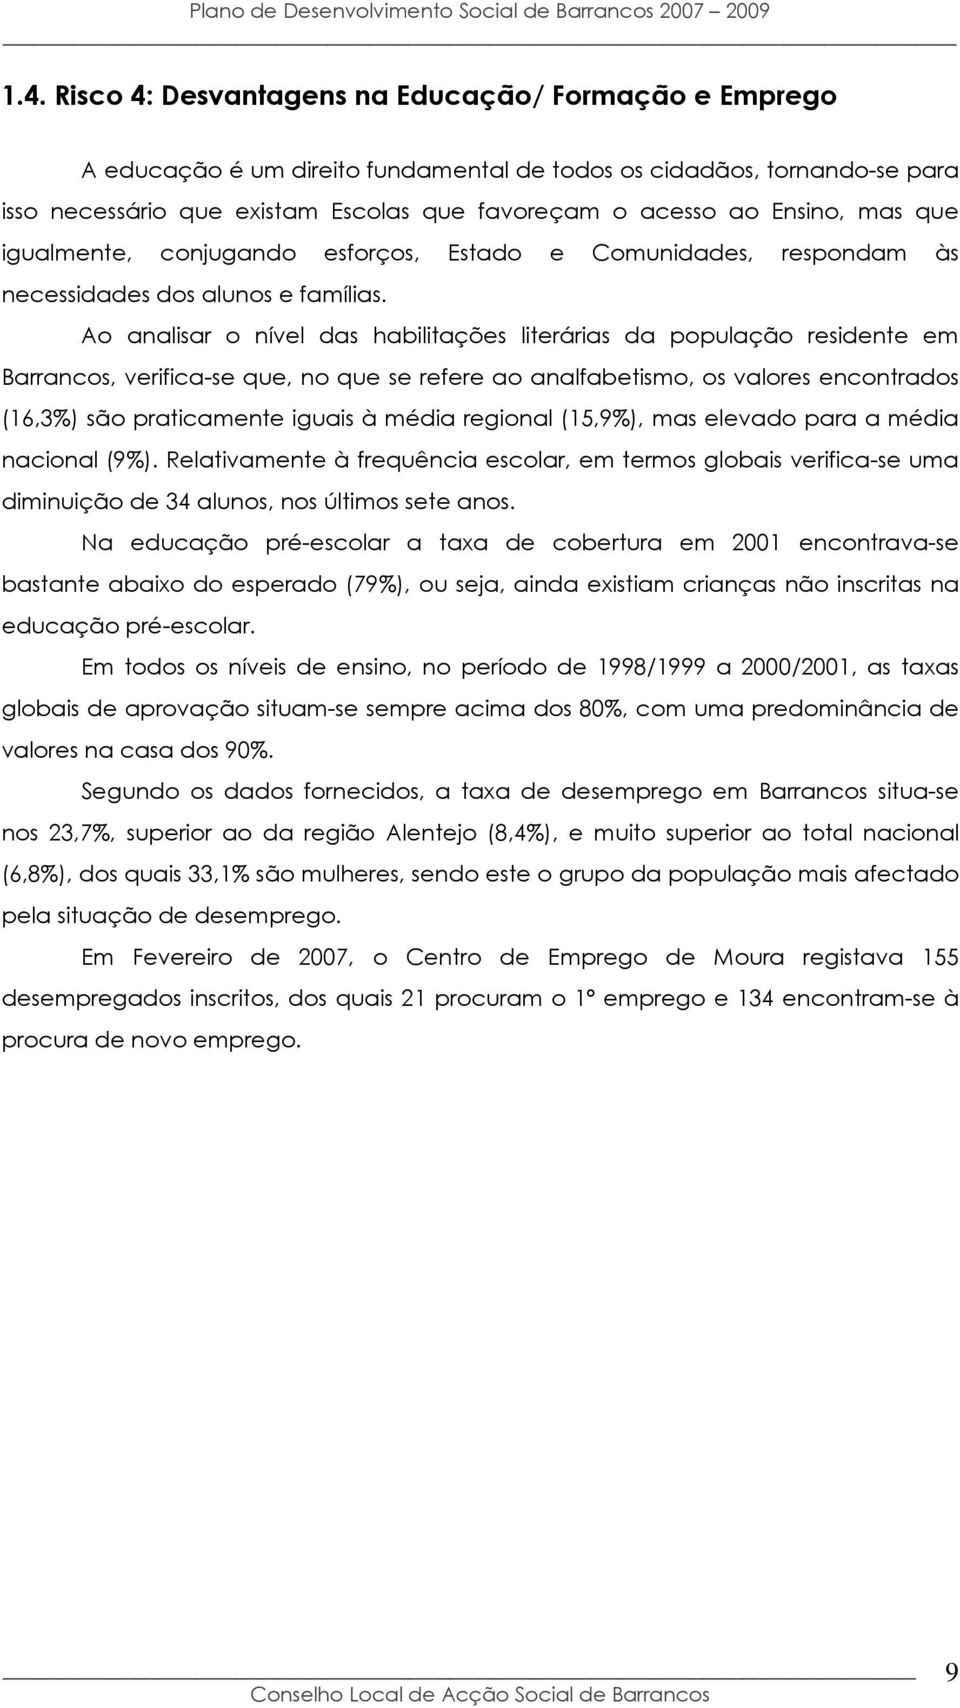 Ao analisar o nível das habilitações literárias da população residente em Barrancos, verifica-se que, no que se refere ao analfabetismo, os valores encontrados (16,3%) são praticamente iguais à média